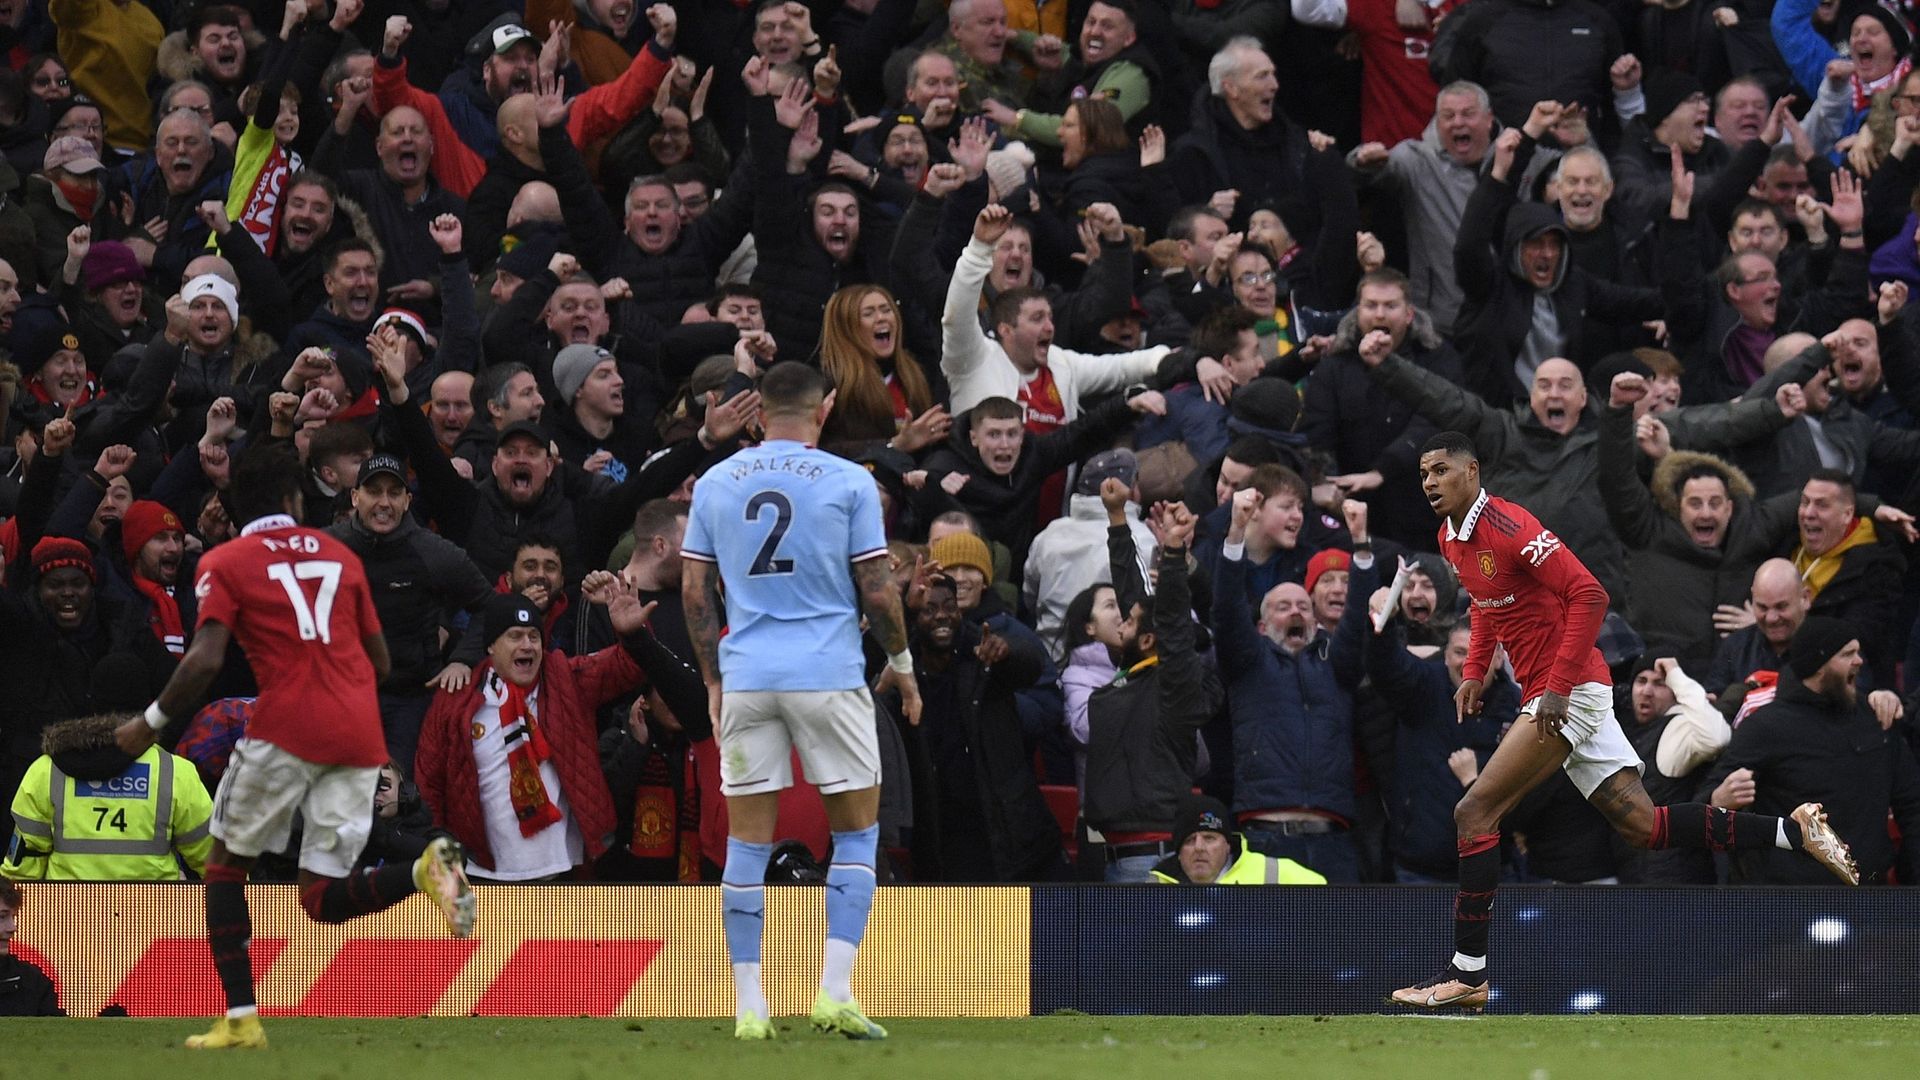 Marcus Rashford a offert la victoire à Manchester United dans le derby.